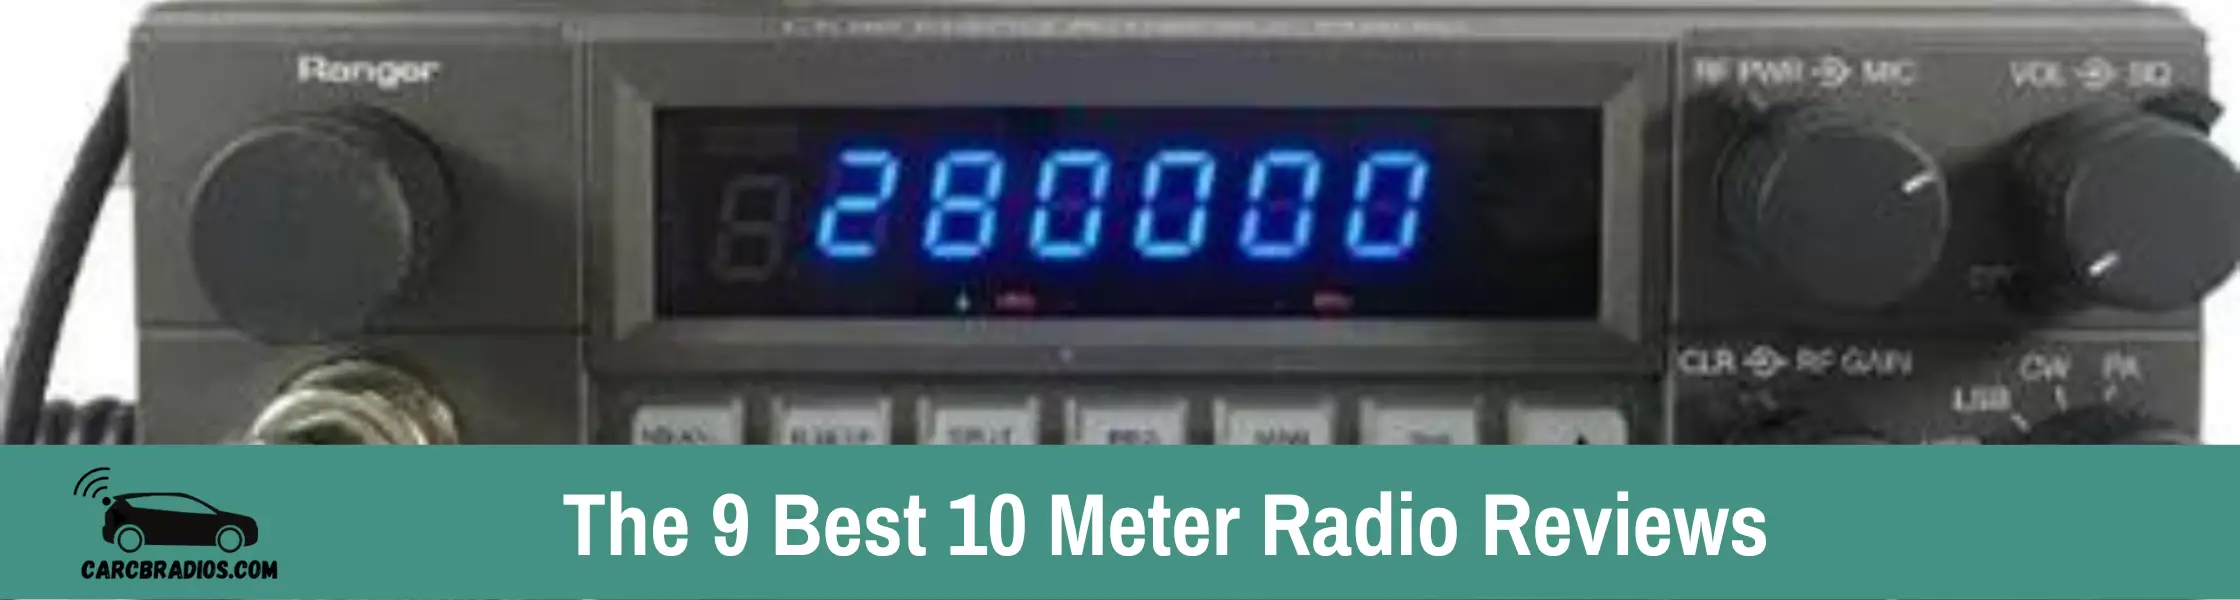 Best 10 Meter Radio Reviews